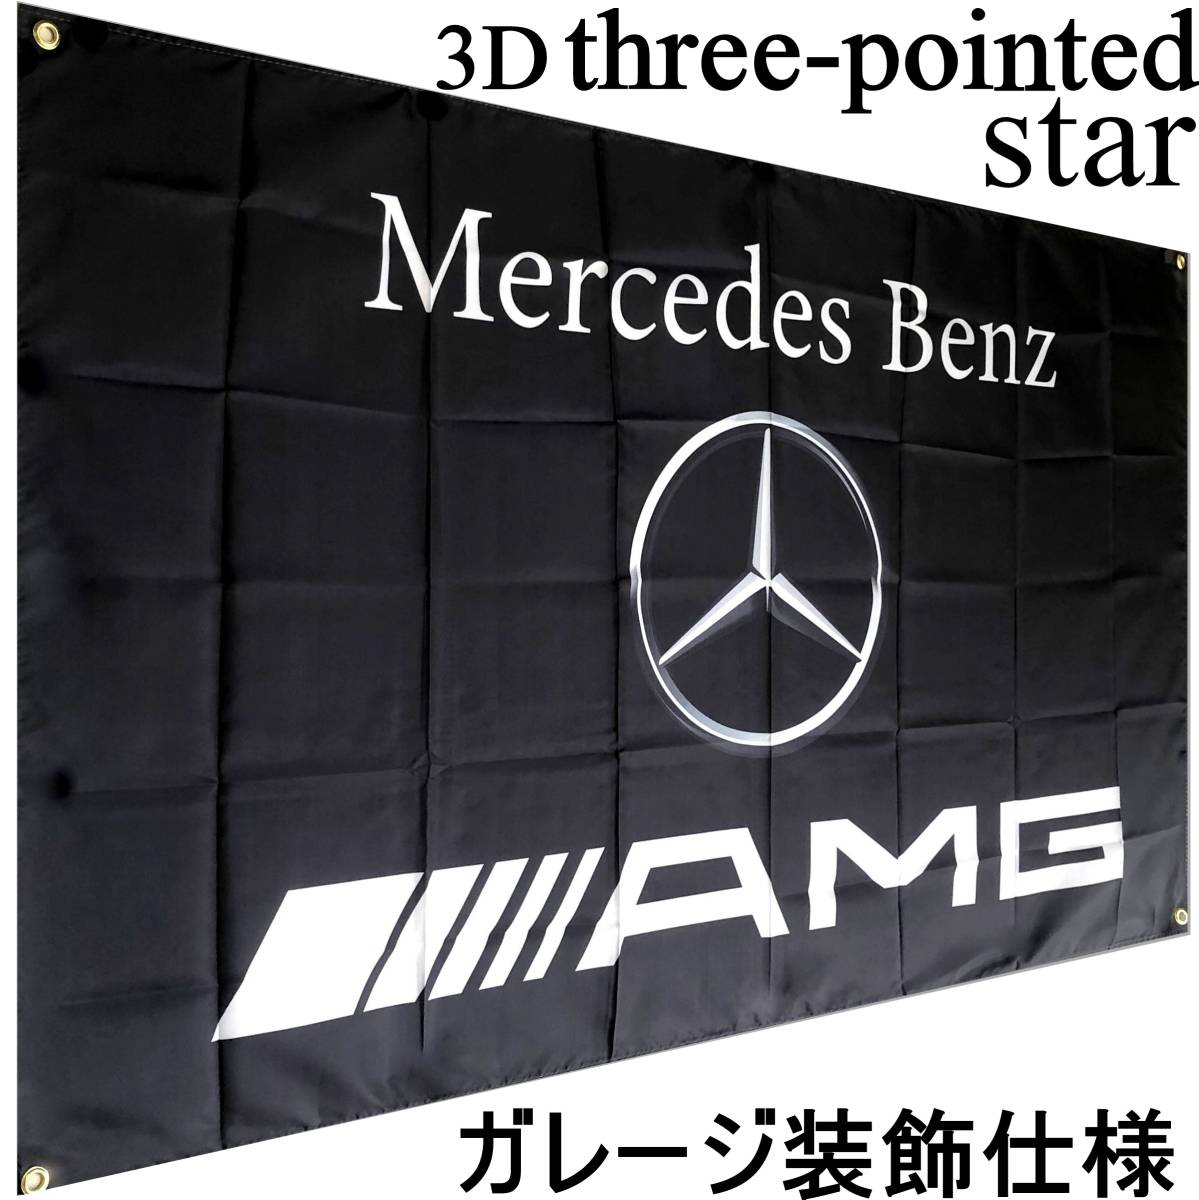 ★ガレージ装飾仕様★ 3Dエンブレム G05 ベンツ旗 ガレージ雑貨 メルセデス Mercedes Benz ベンツフラッグ AMG メルセデスベンツ ポスターの画像2